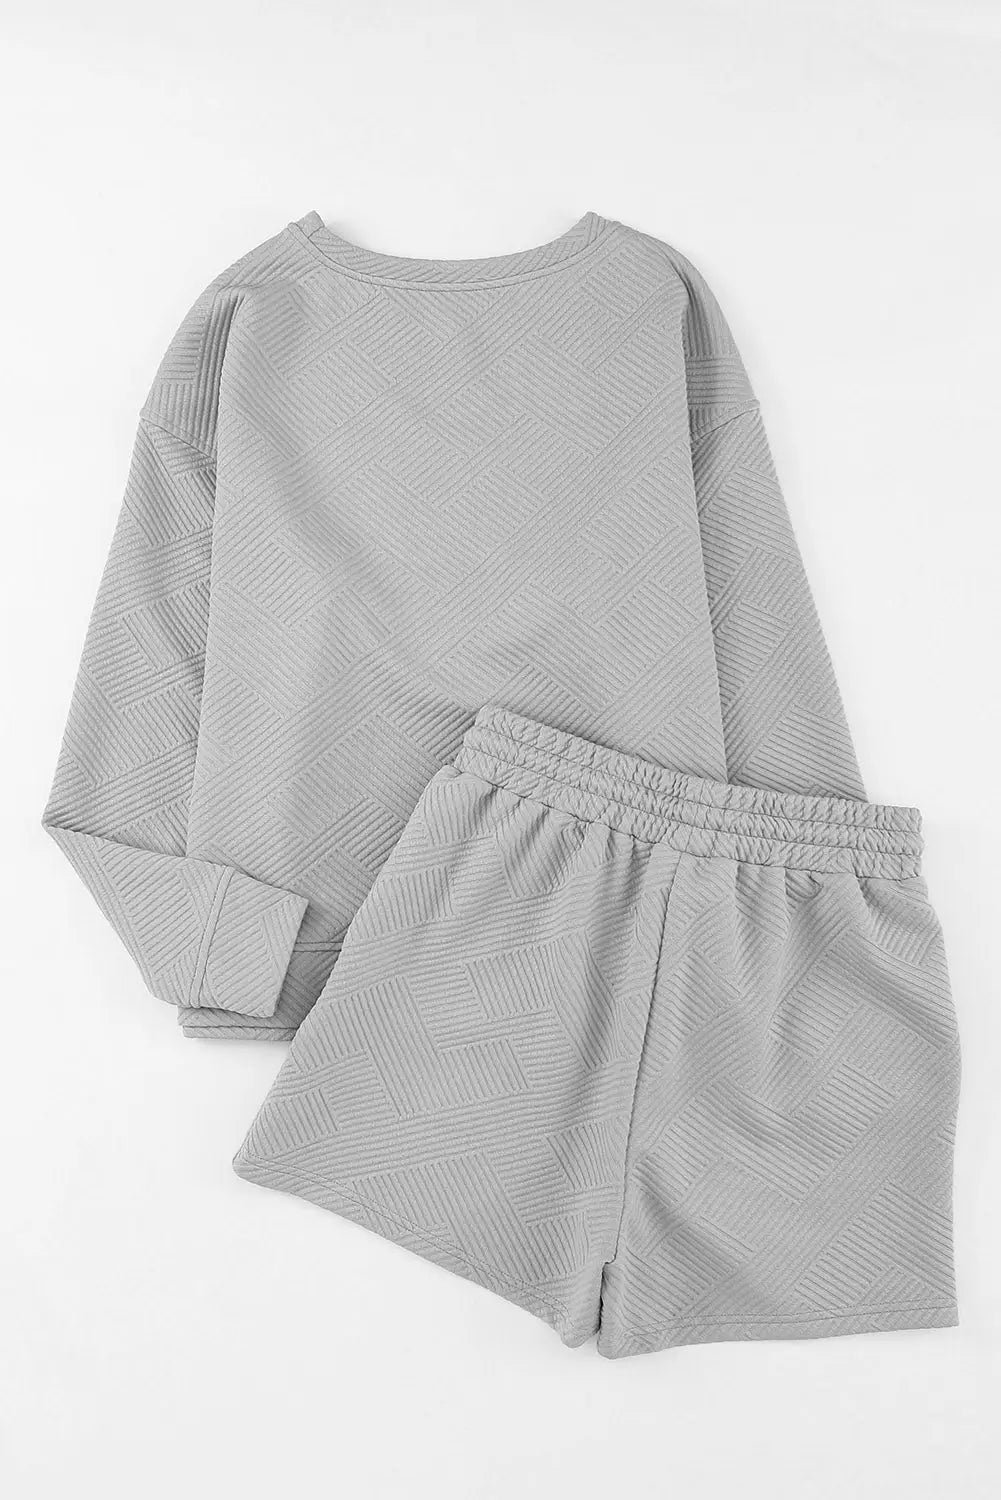 Gray textured long sleeve top and drawstring shorts set -